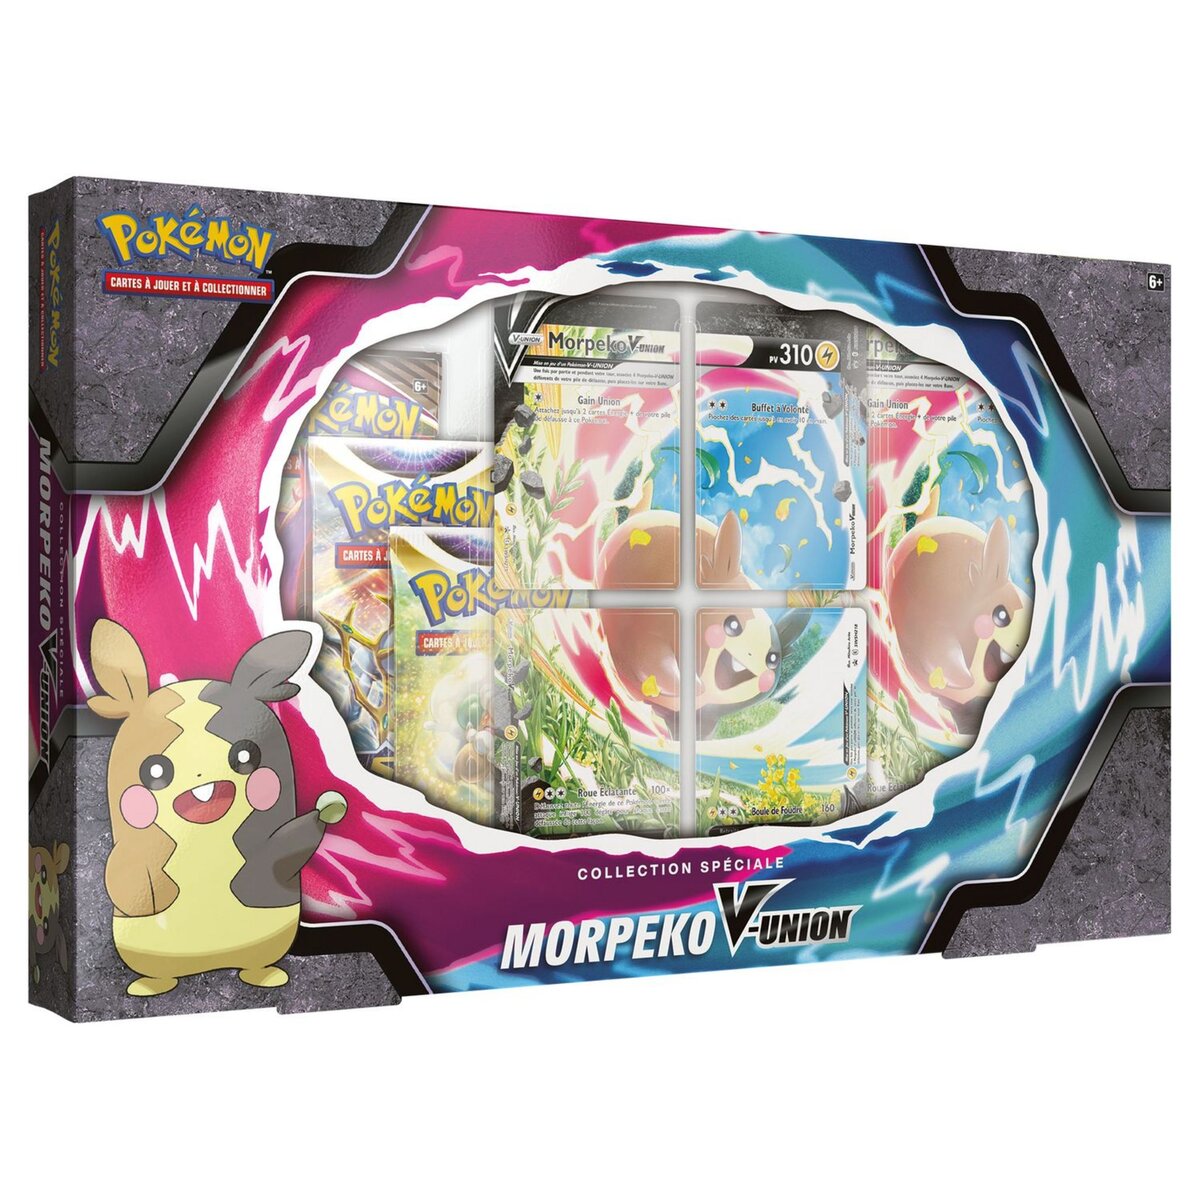 POKEMON Coffret Pokémon Morpeko V Union